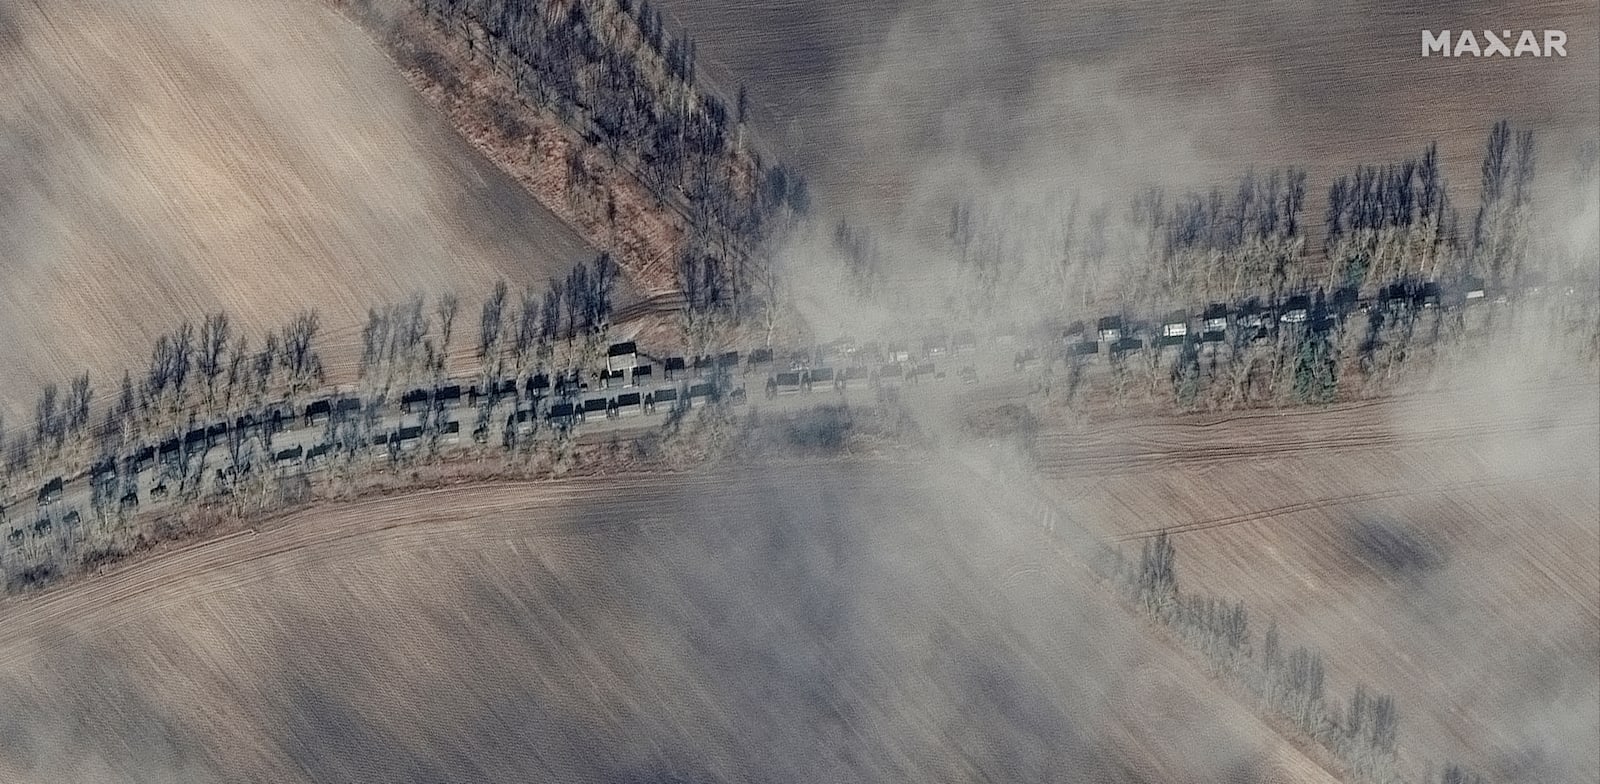 צילומי לווין שמראים את הכוחות הרוסיים מתקדמים לכיוון קייב. הקצנת השיח עלולה להביא להתחפרות של פוטין בעמדתו / צילום: Reuters, Maxar Technologies/Handout